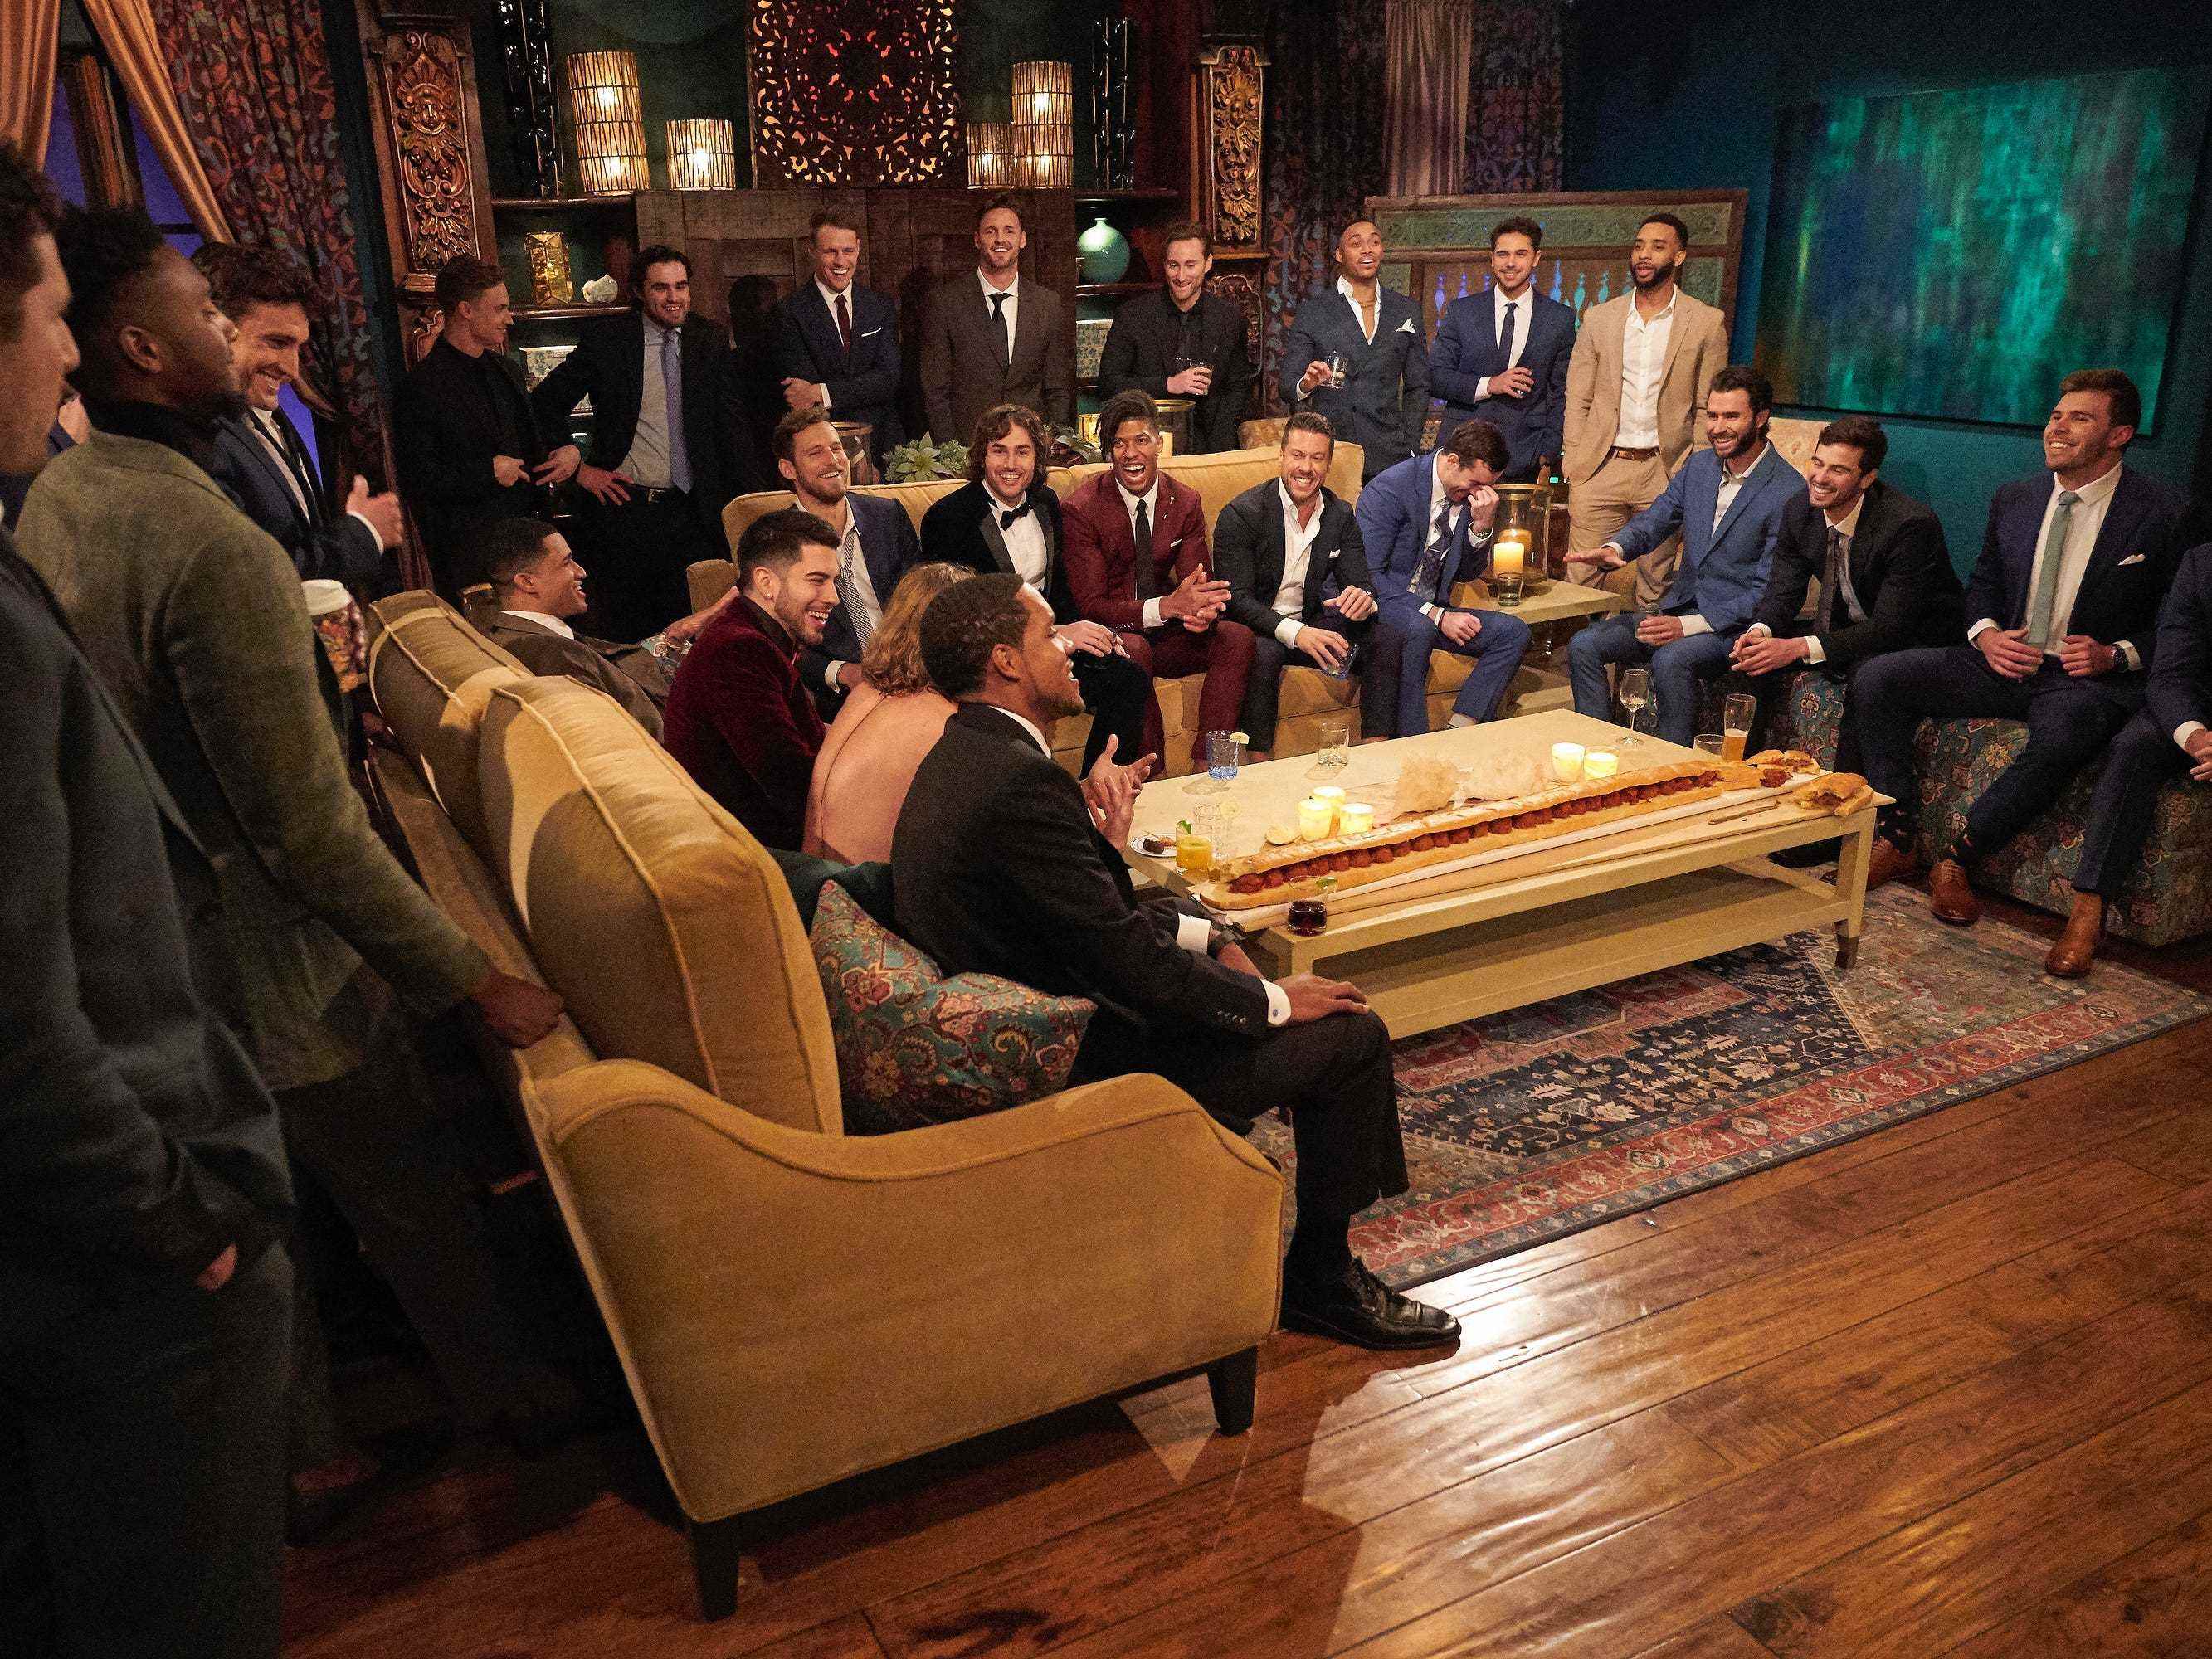 Die männlichen Kandidaten in Anzug und Krawatte versammeln sich in diesem Standbild aus der 19. Staffel von „Die Bachelorette“ um einen Couchtisch.